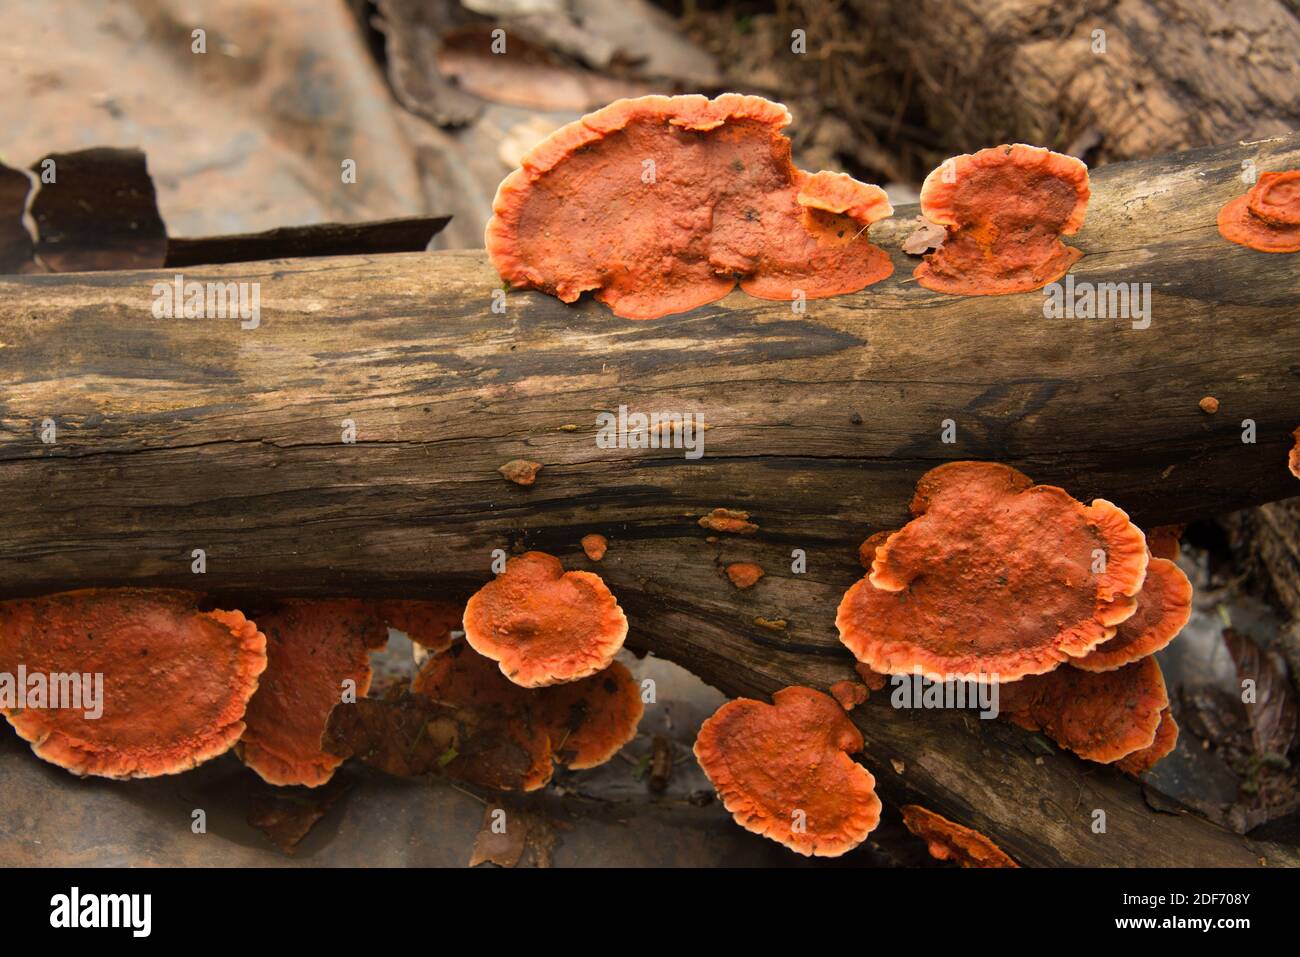 Cinnabar polypore (Pycnoporus sanguineus oder Polyporus sanguineus) ist ein heilender saprophytischer Pilz. Dieses Foto wurde in Iguazu, Argentinien, aufgenommen. Stockfoto